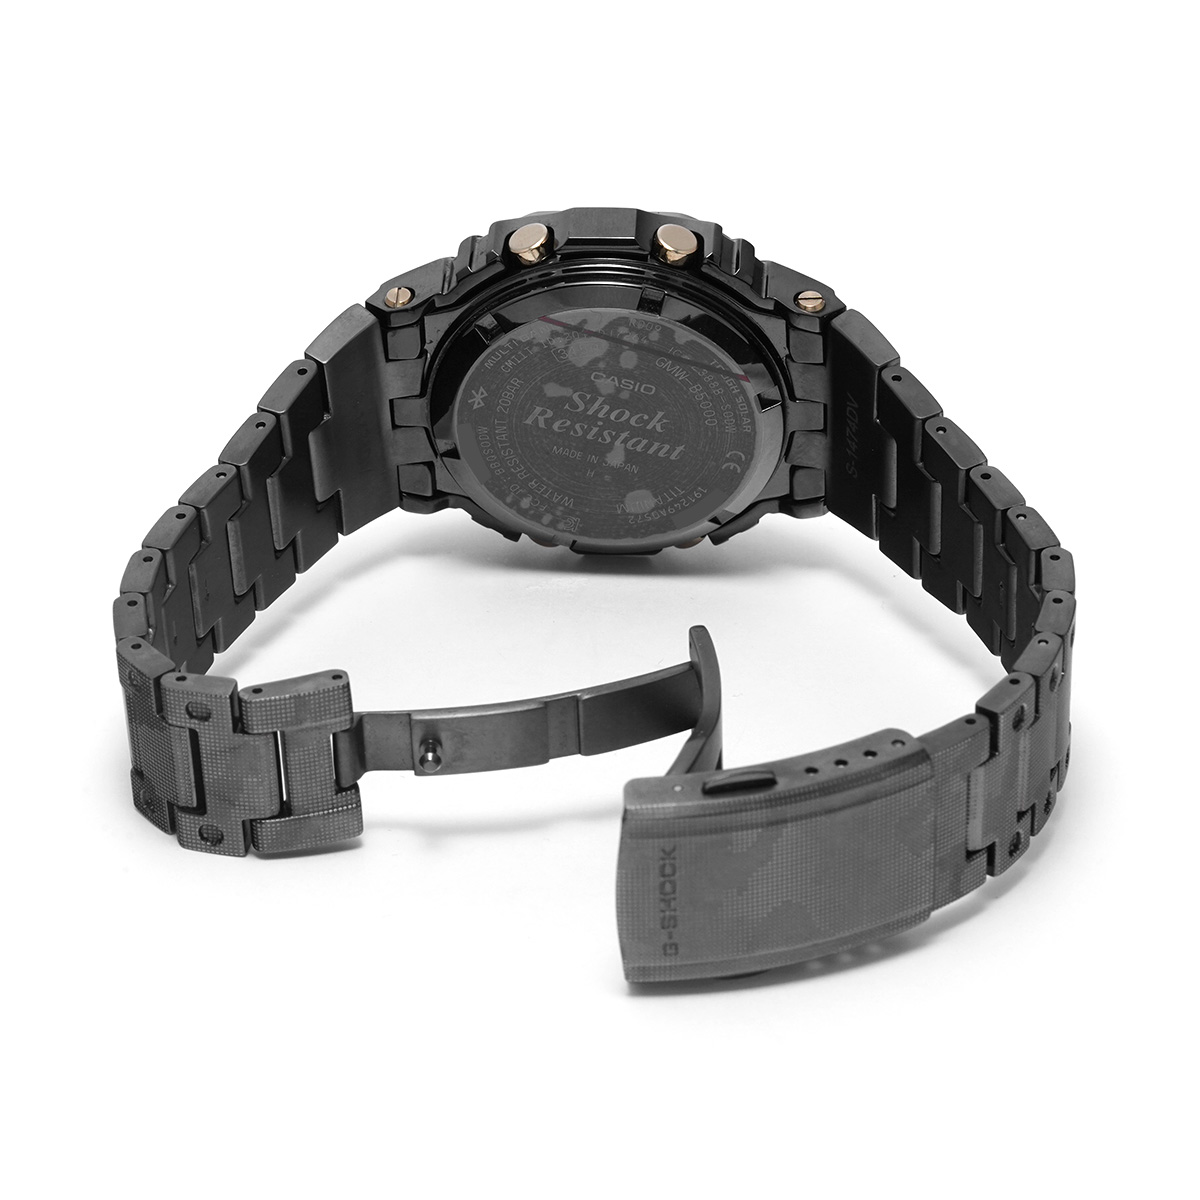 カシオ G-SHOCK GMW-B5000シリーズ GMW-B5000TCF-2JR ブラック メンズ 時計 【中古】【wristwatch】